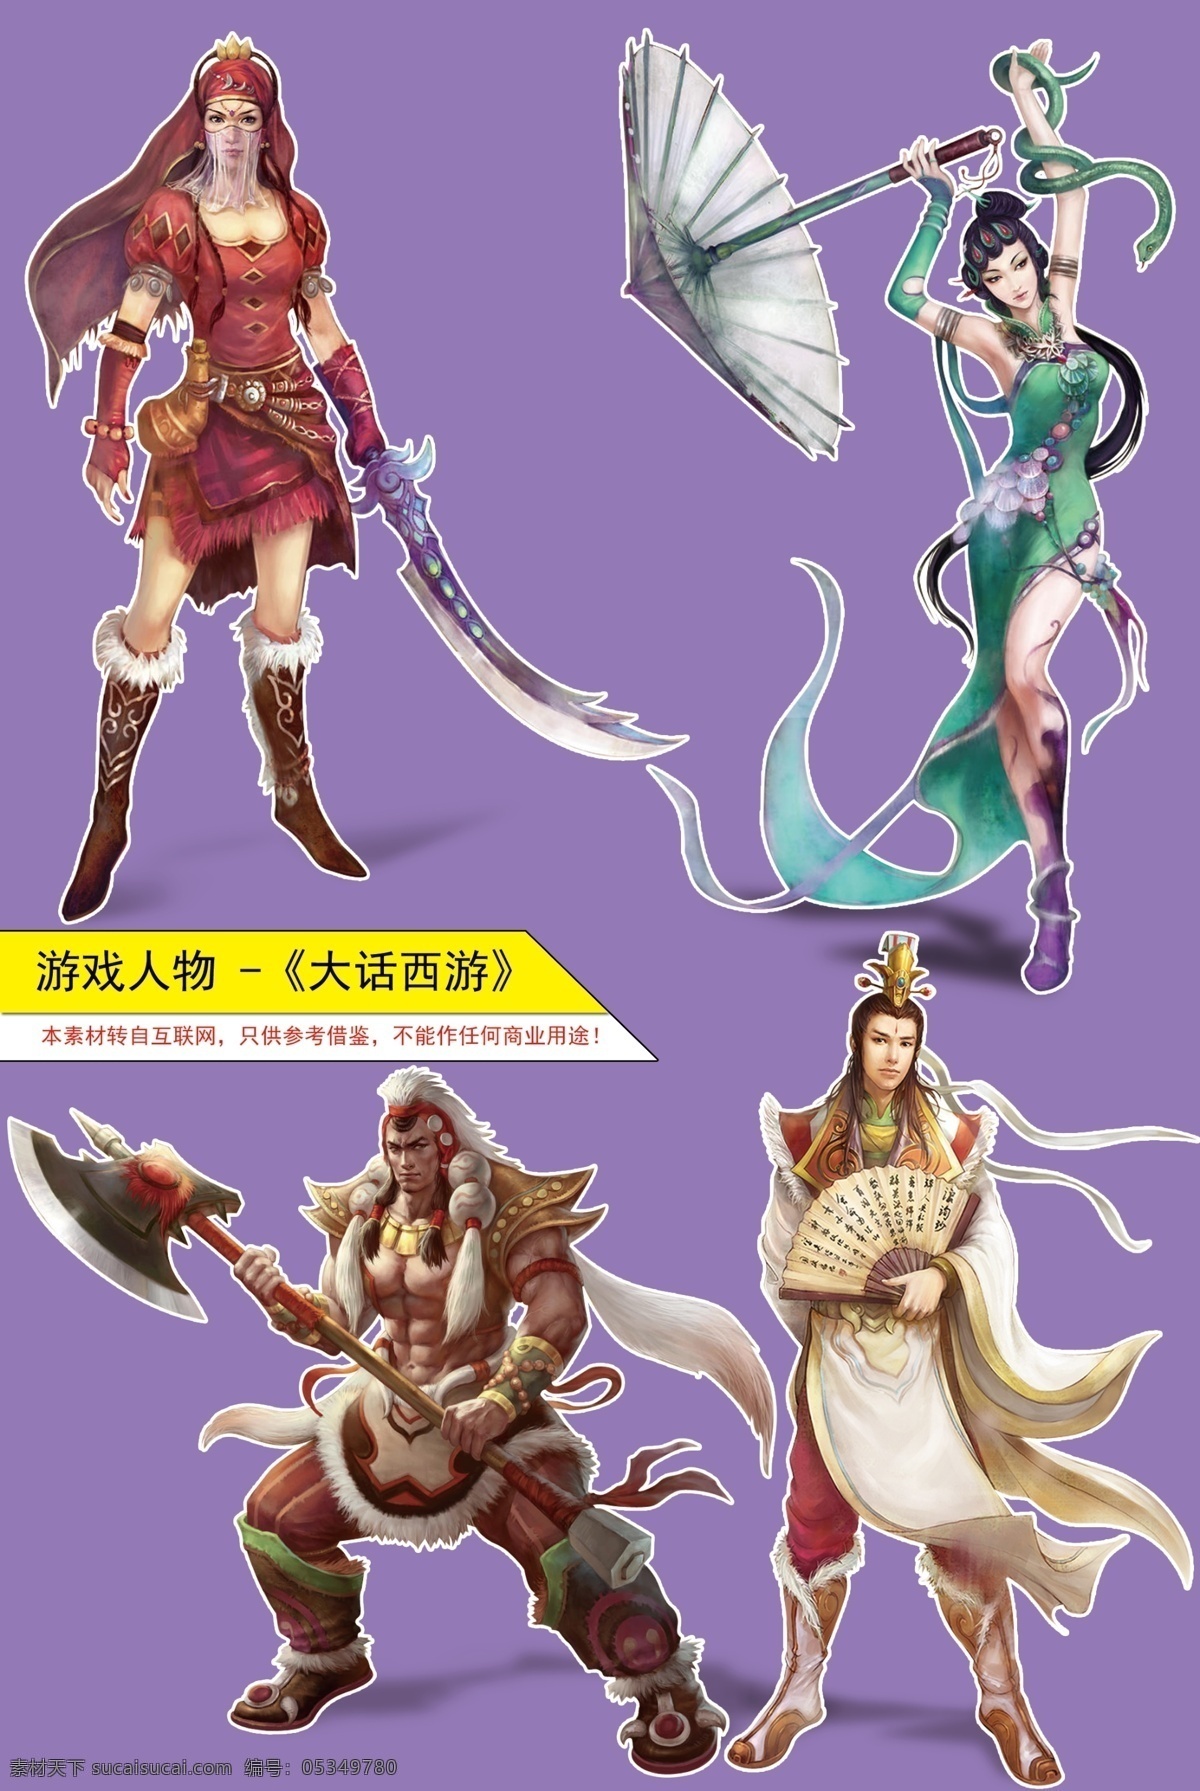 大话西游 游戏人物 古典人物 中国 古典 风格 人物 游戏原画 分层 源文件